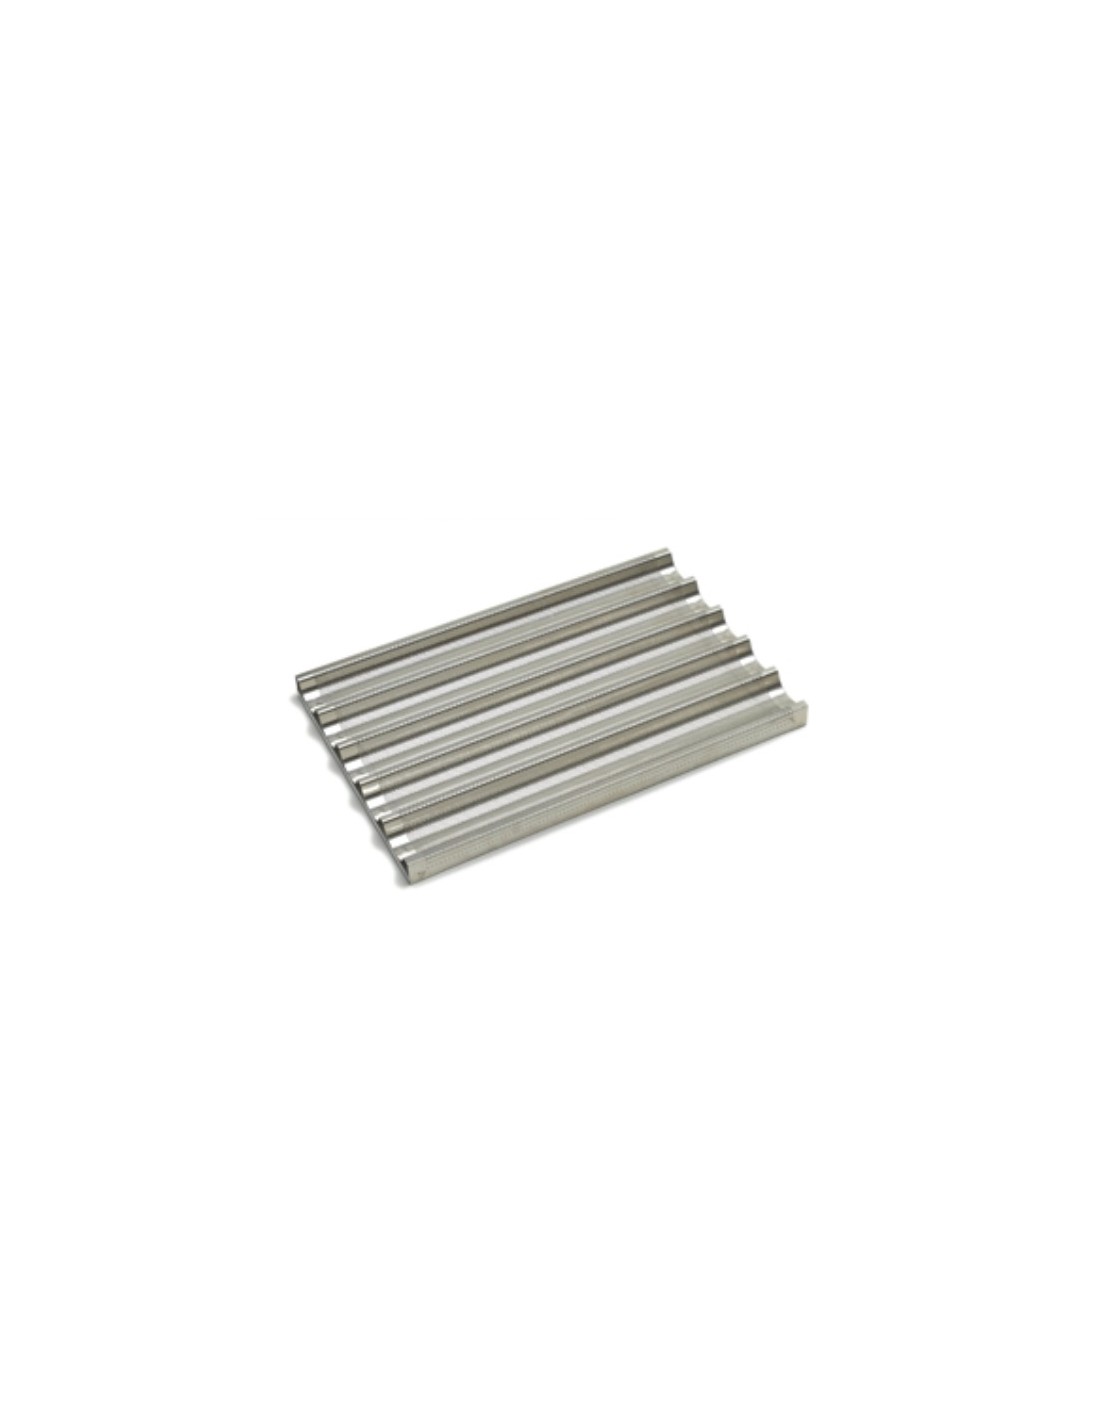 Corrugated perforated aluminium sheet - Cm 60 x 40